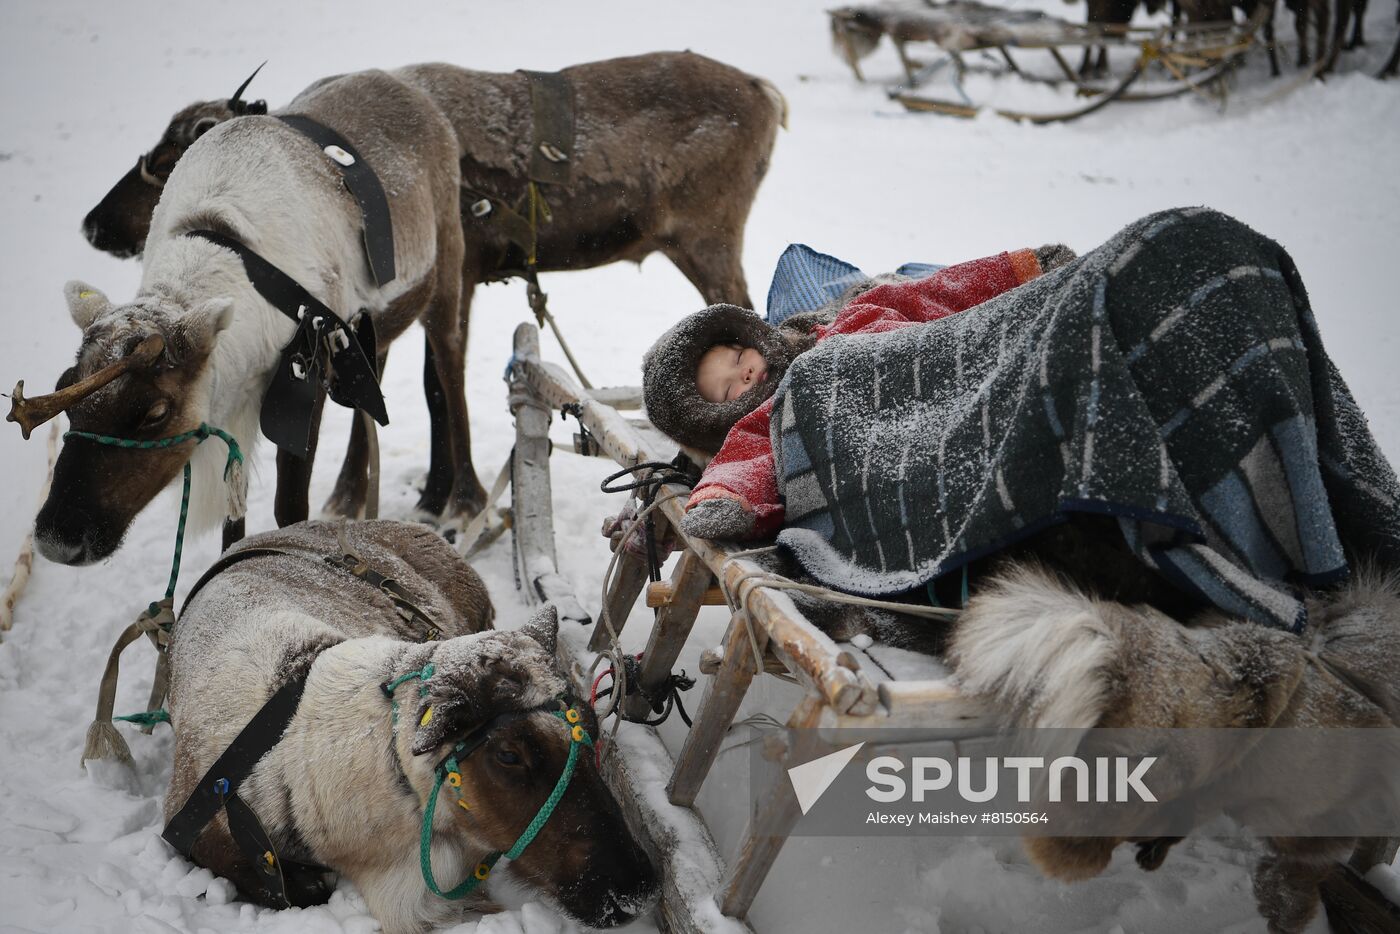 Russia Reindeer Herder's Day